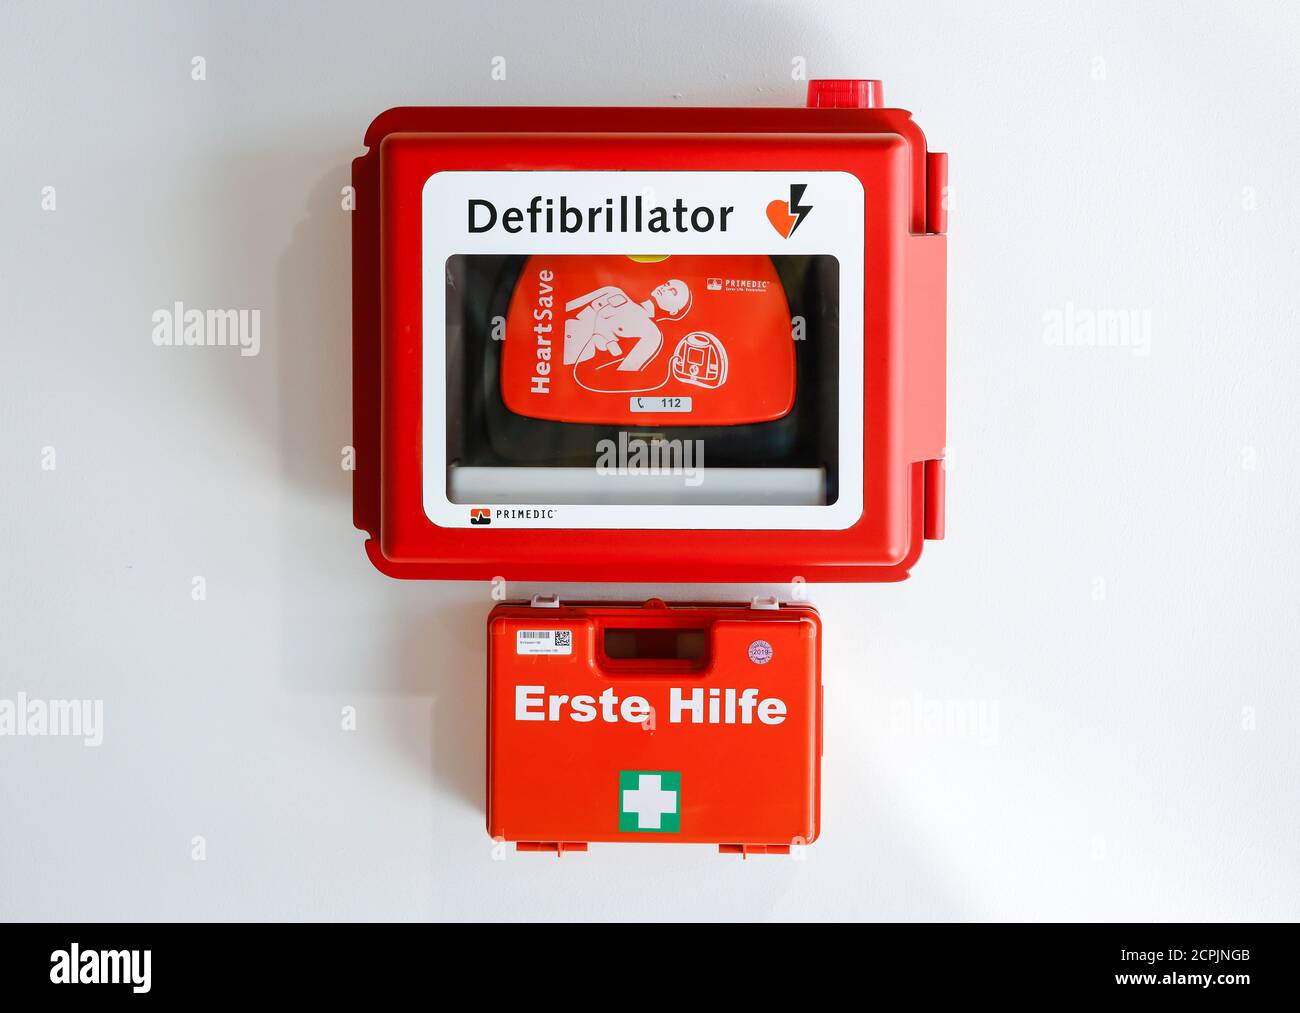 Il defibrillatore e il kit di pronto soccorso sono appesi a una parete nello spazio pubblico dell'aeroporto di Düsseldorf, Renania settentrionale-Vestfalia, Germania Foto Stock